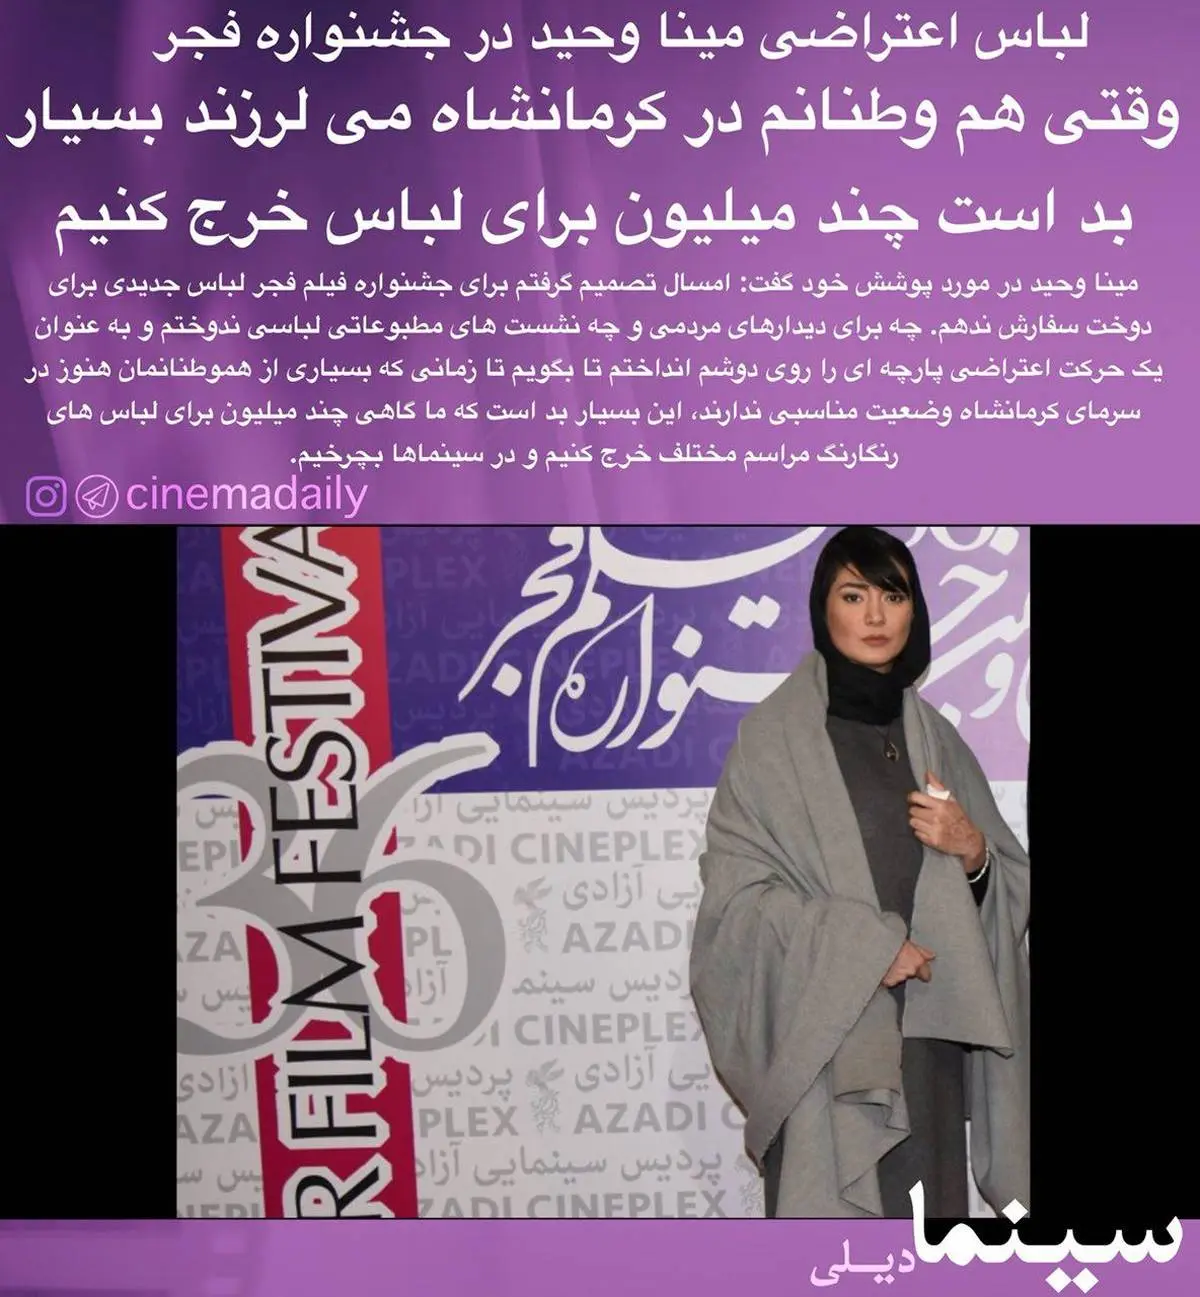 لباس اعتراضی خانم بازیگر در جشنواره! +عکس